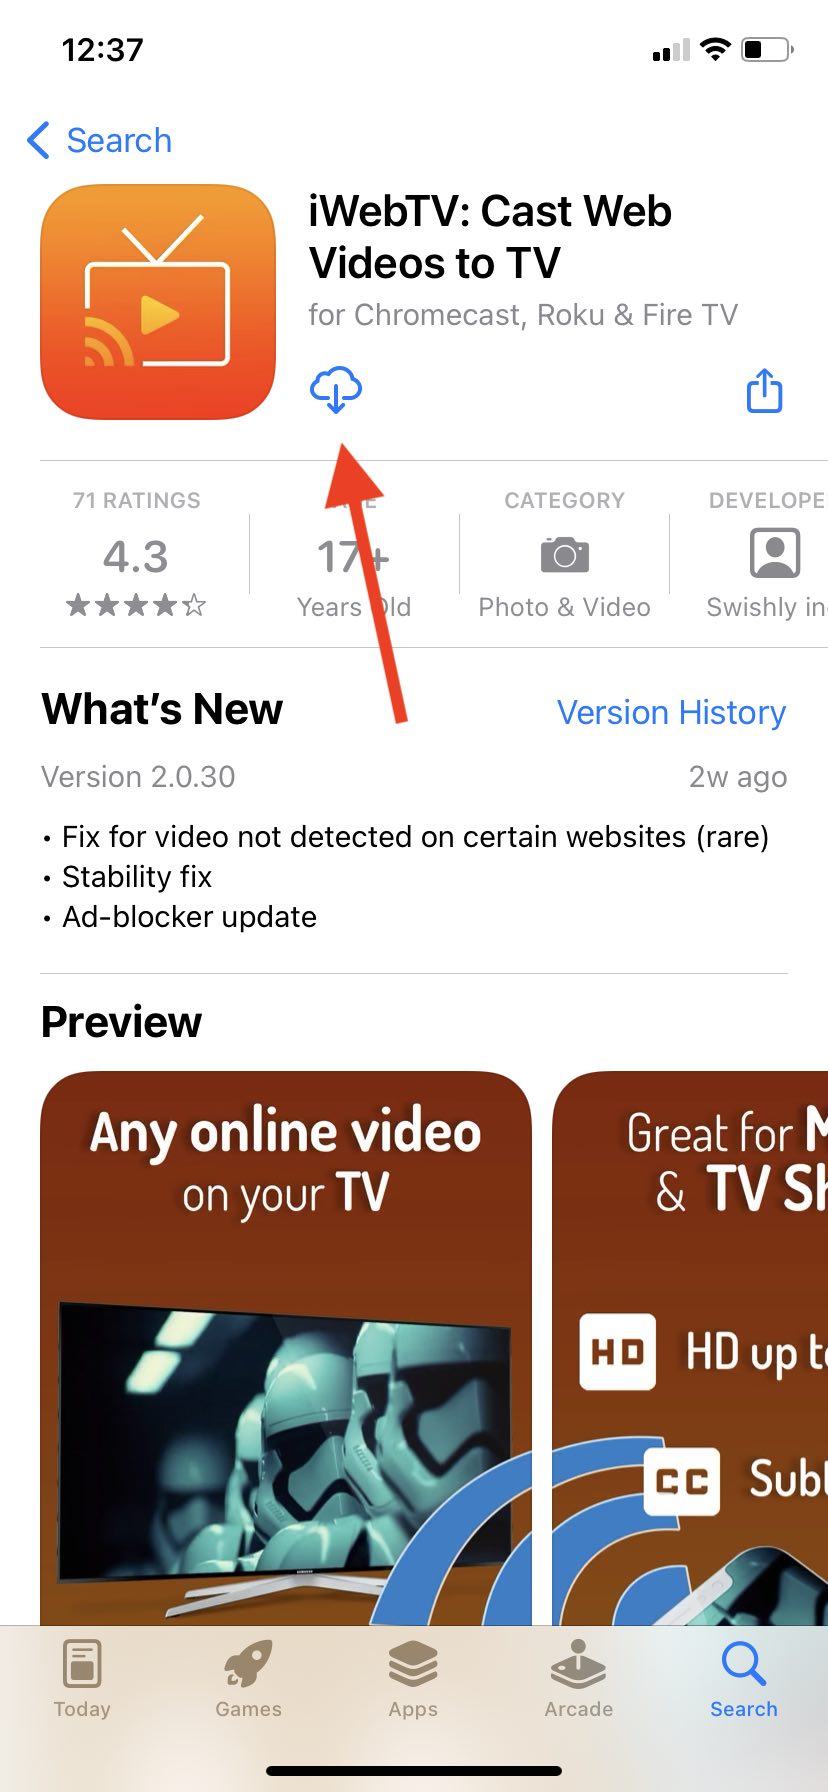 iWebTV in the App Store screenshot